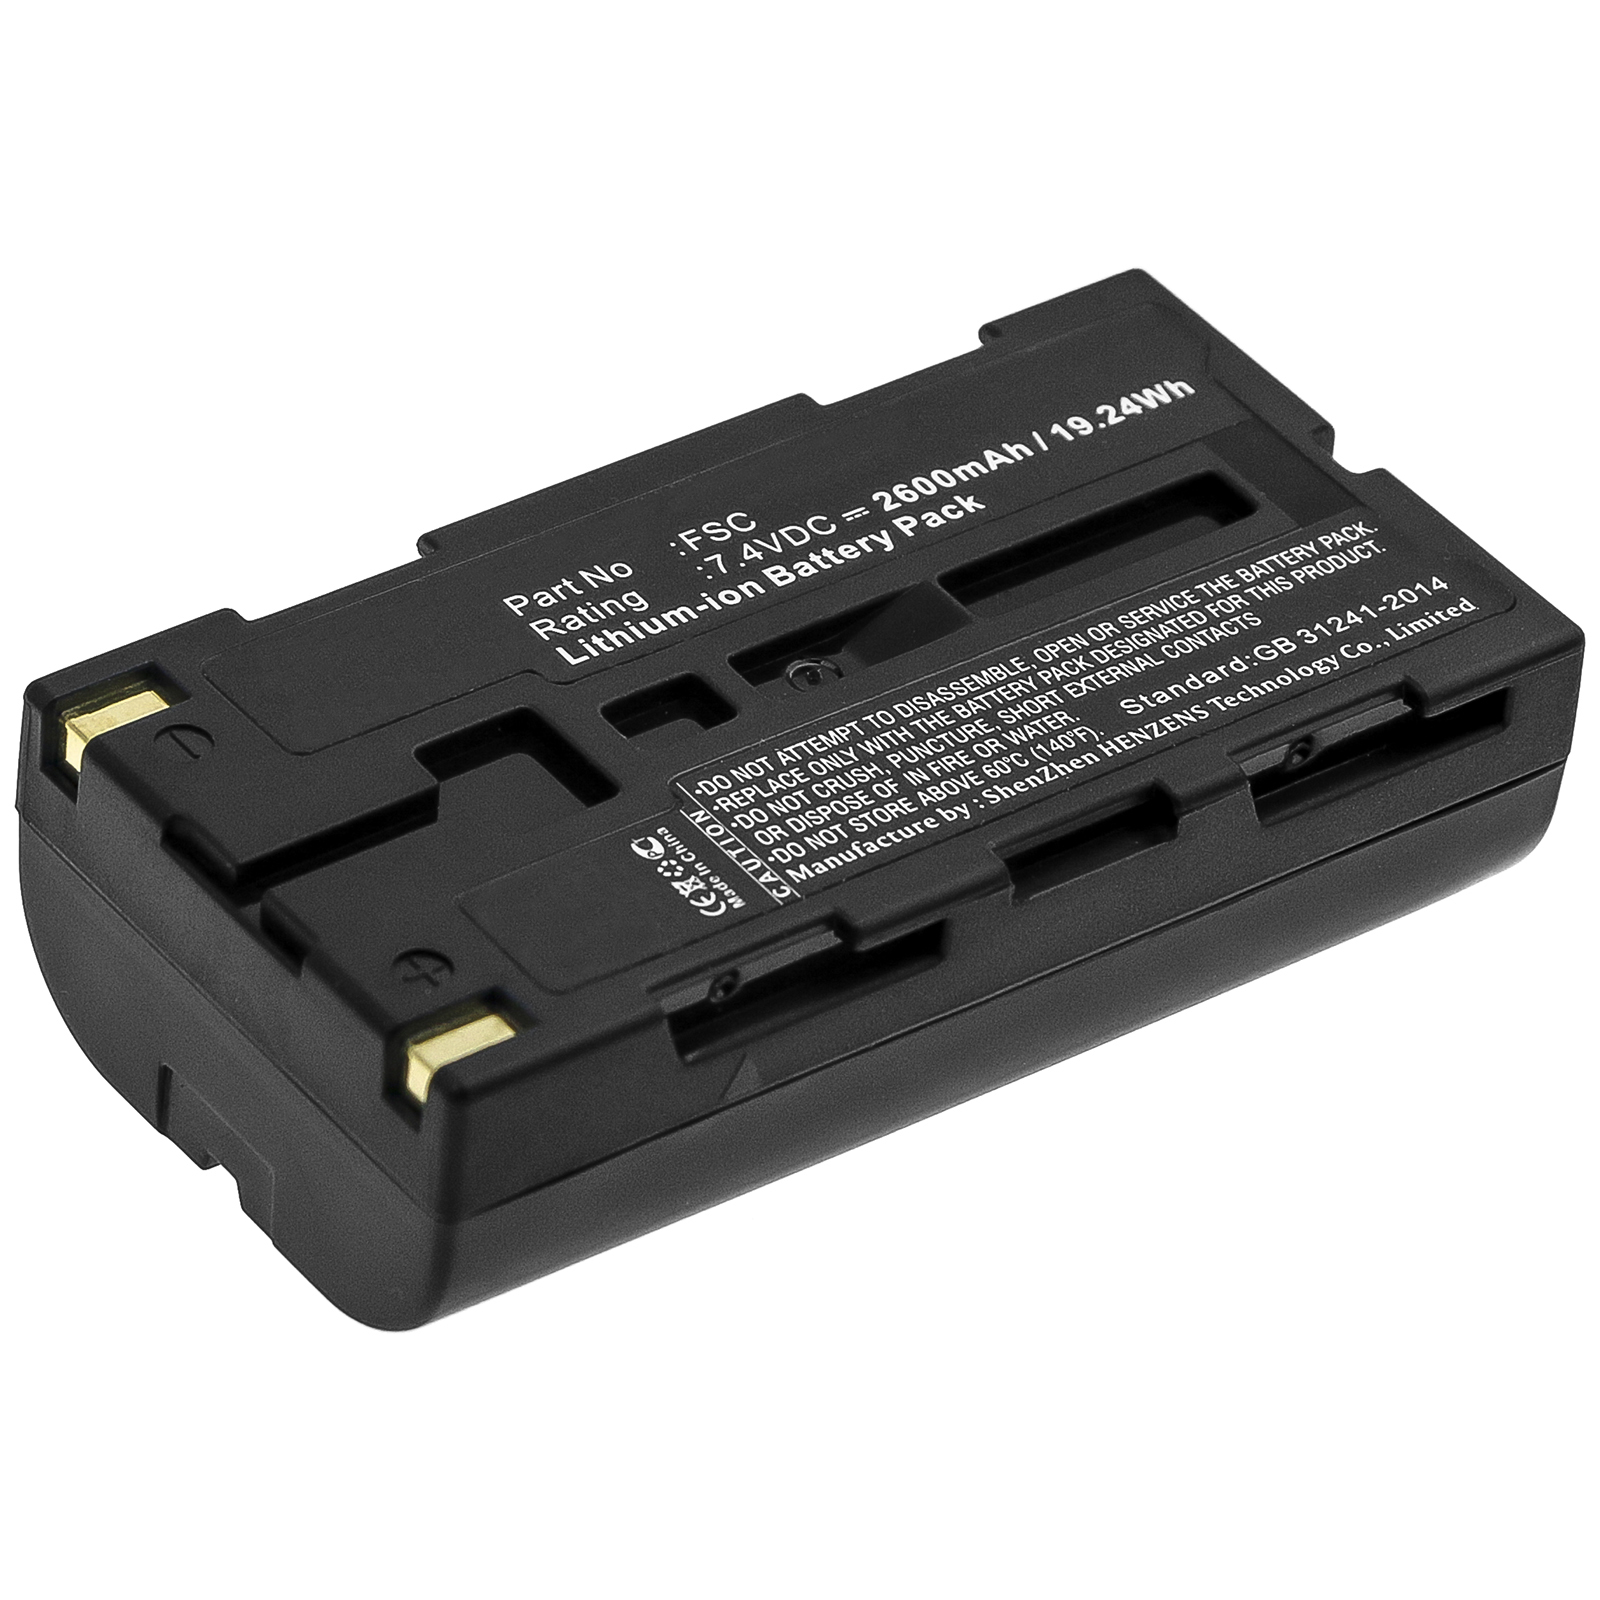 Synergy Digital Equipment Battery, Compatible with Fuji FSC Equipment Battery (7.4V, Li-ion, 2600mAh)